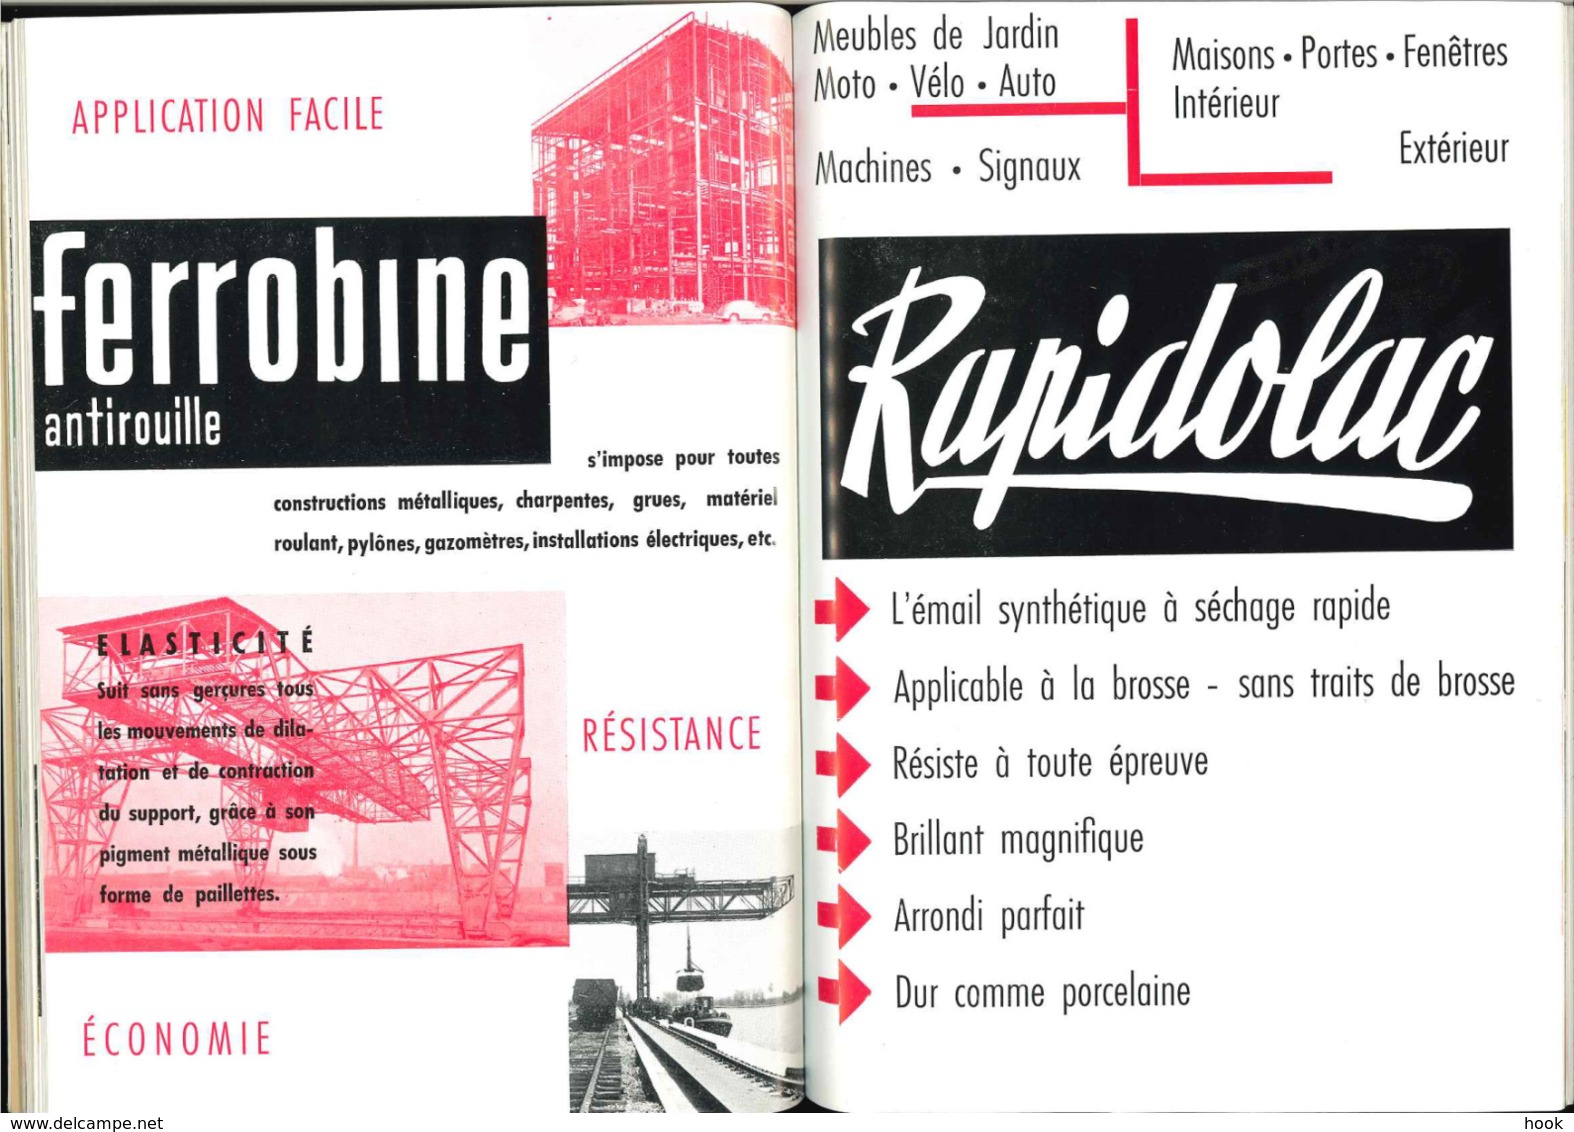 Brochure de promotion "Luxembourg au service du Congo" (années 50).